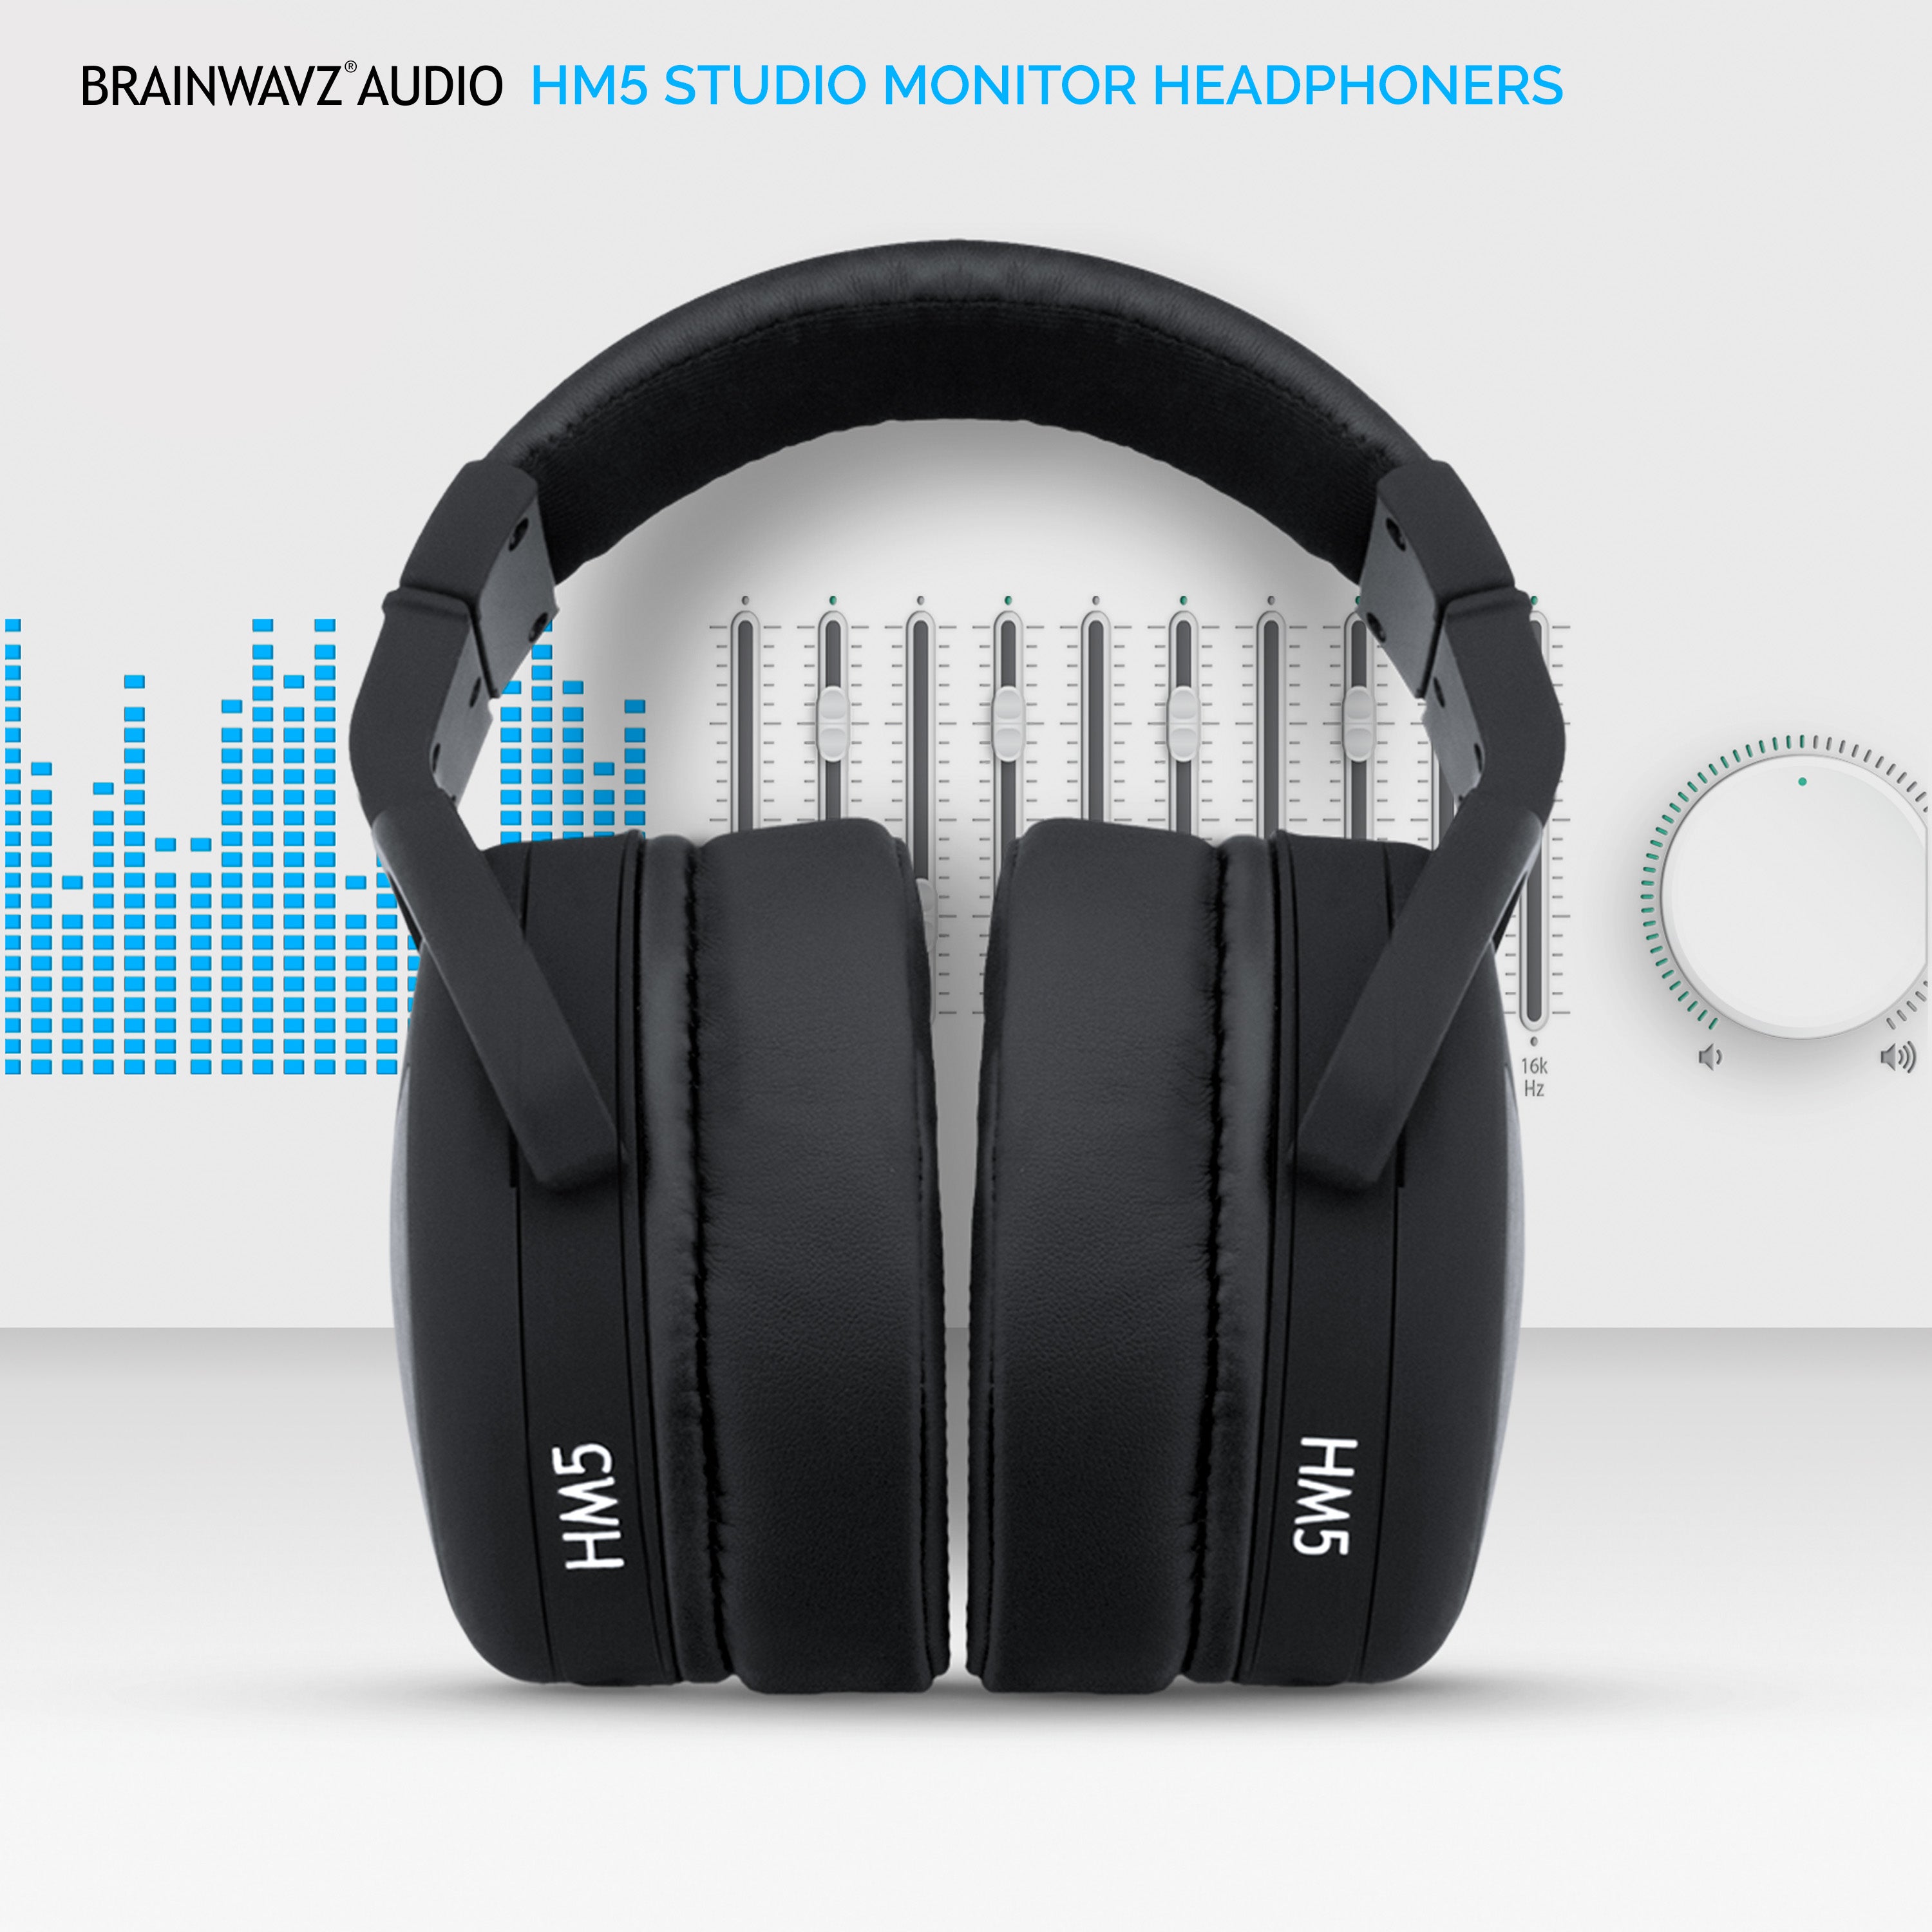 Cuffie per monitor da studio HM5 - Brainwavz Audio